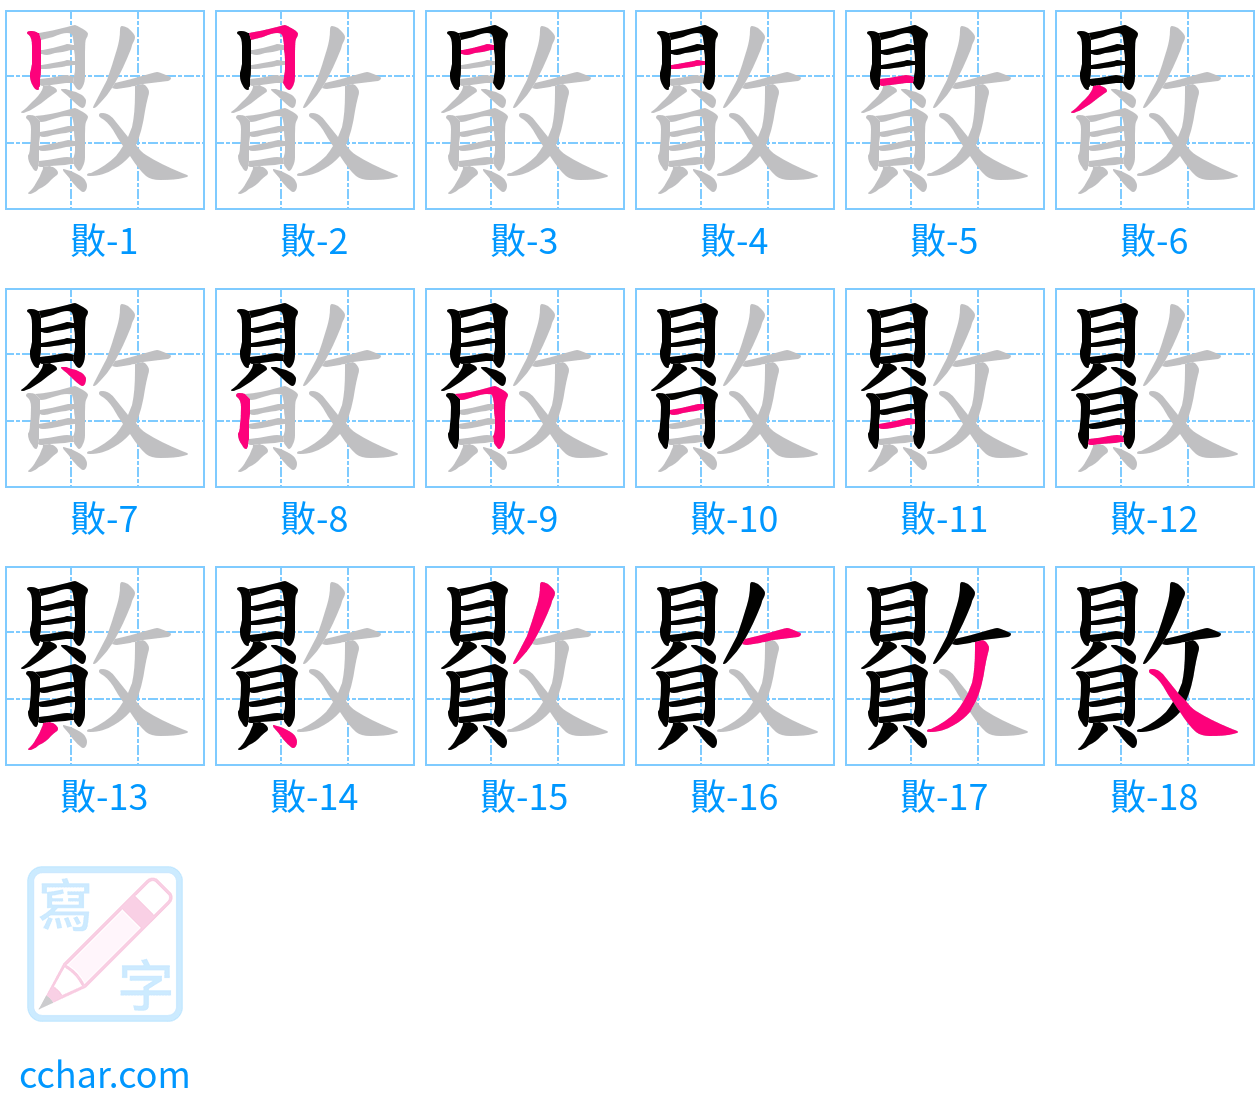 贁 stroke order step-by-step diagram